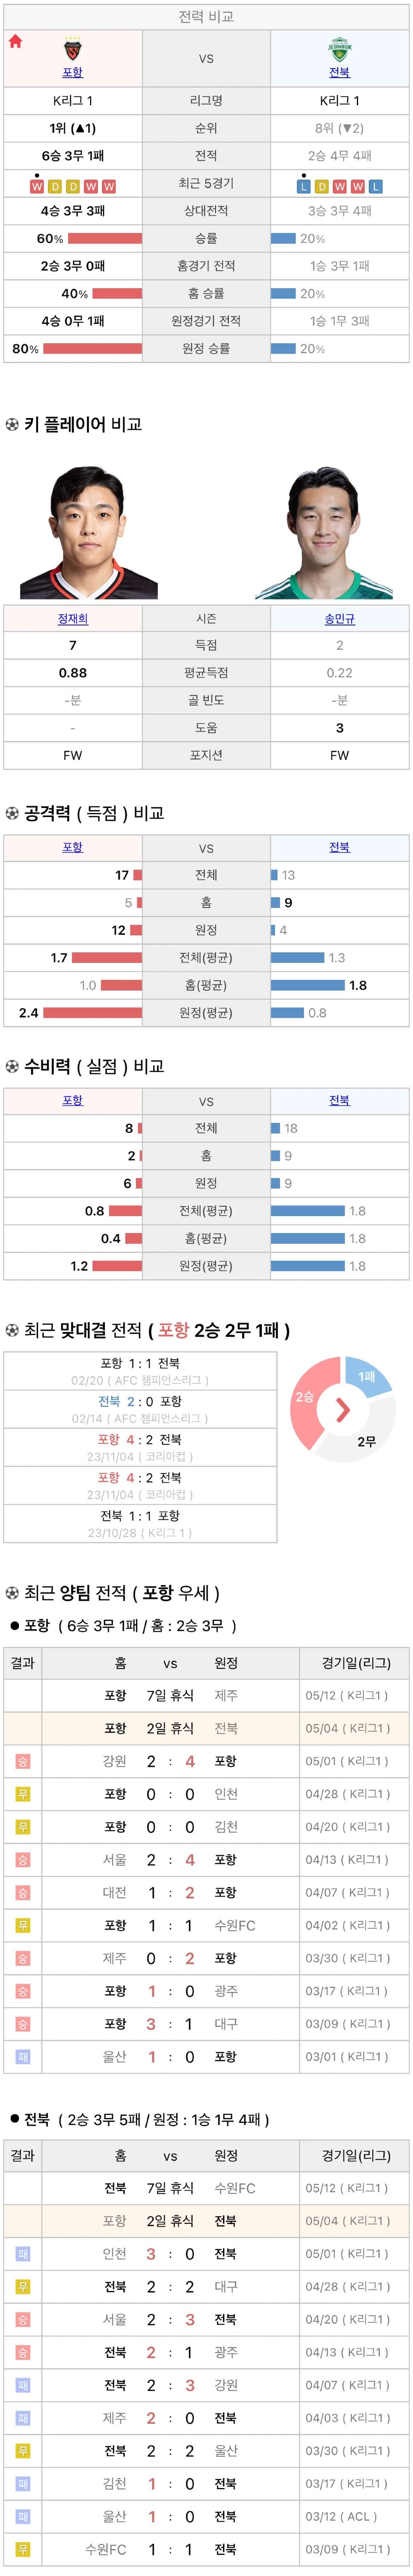 5월4일 K리그 프로축구 포항스틸러스 vs 전북현대 분석